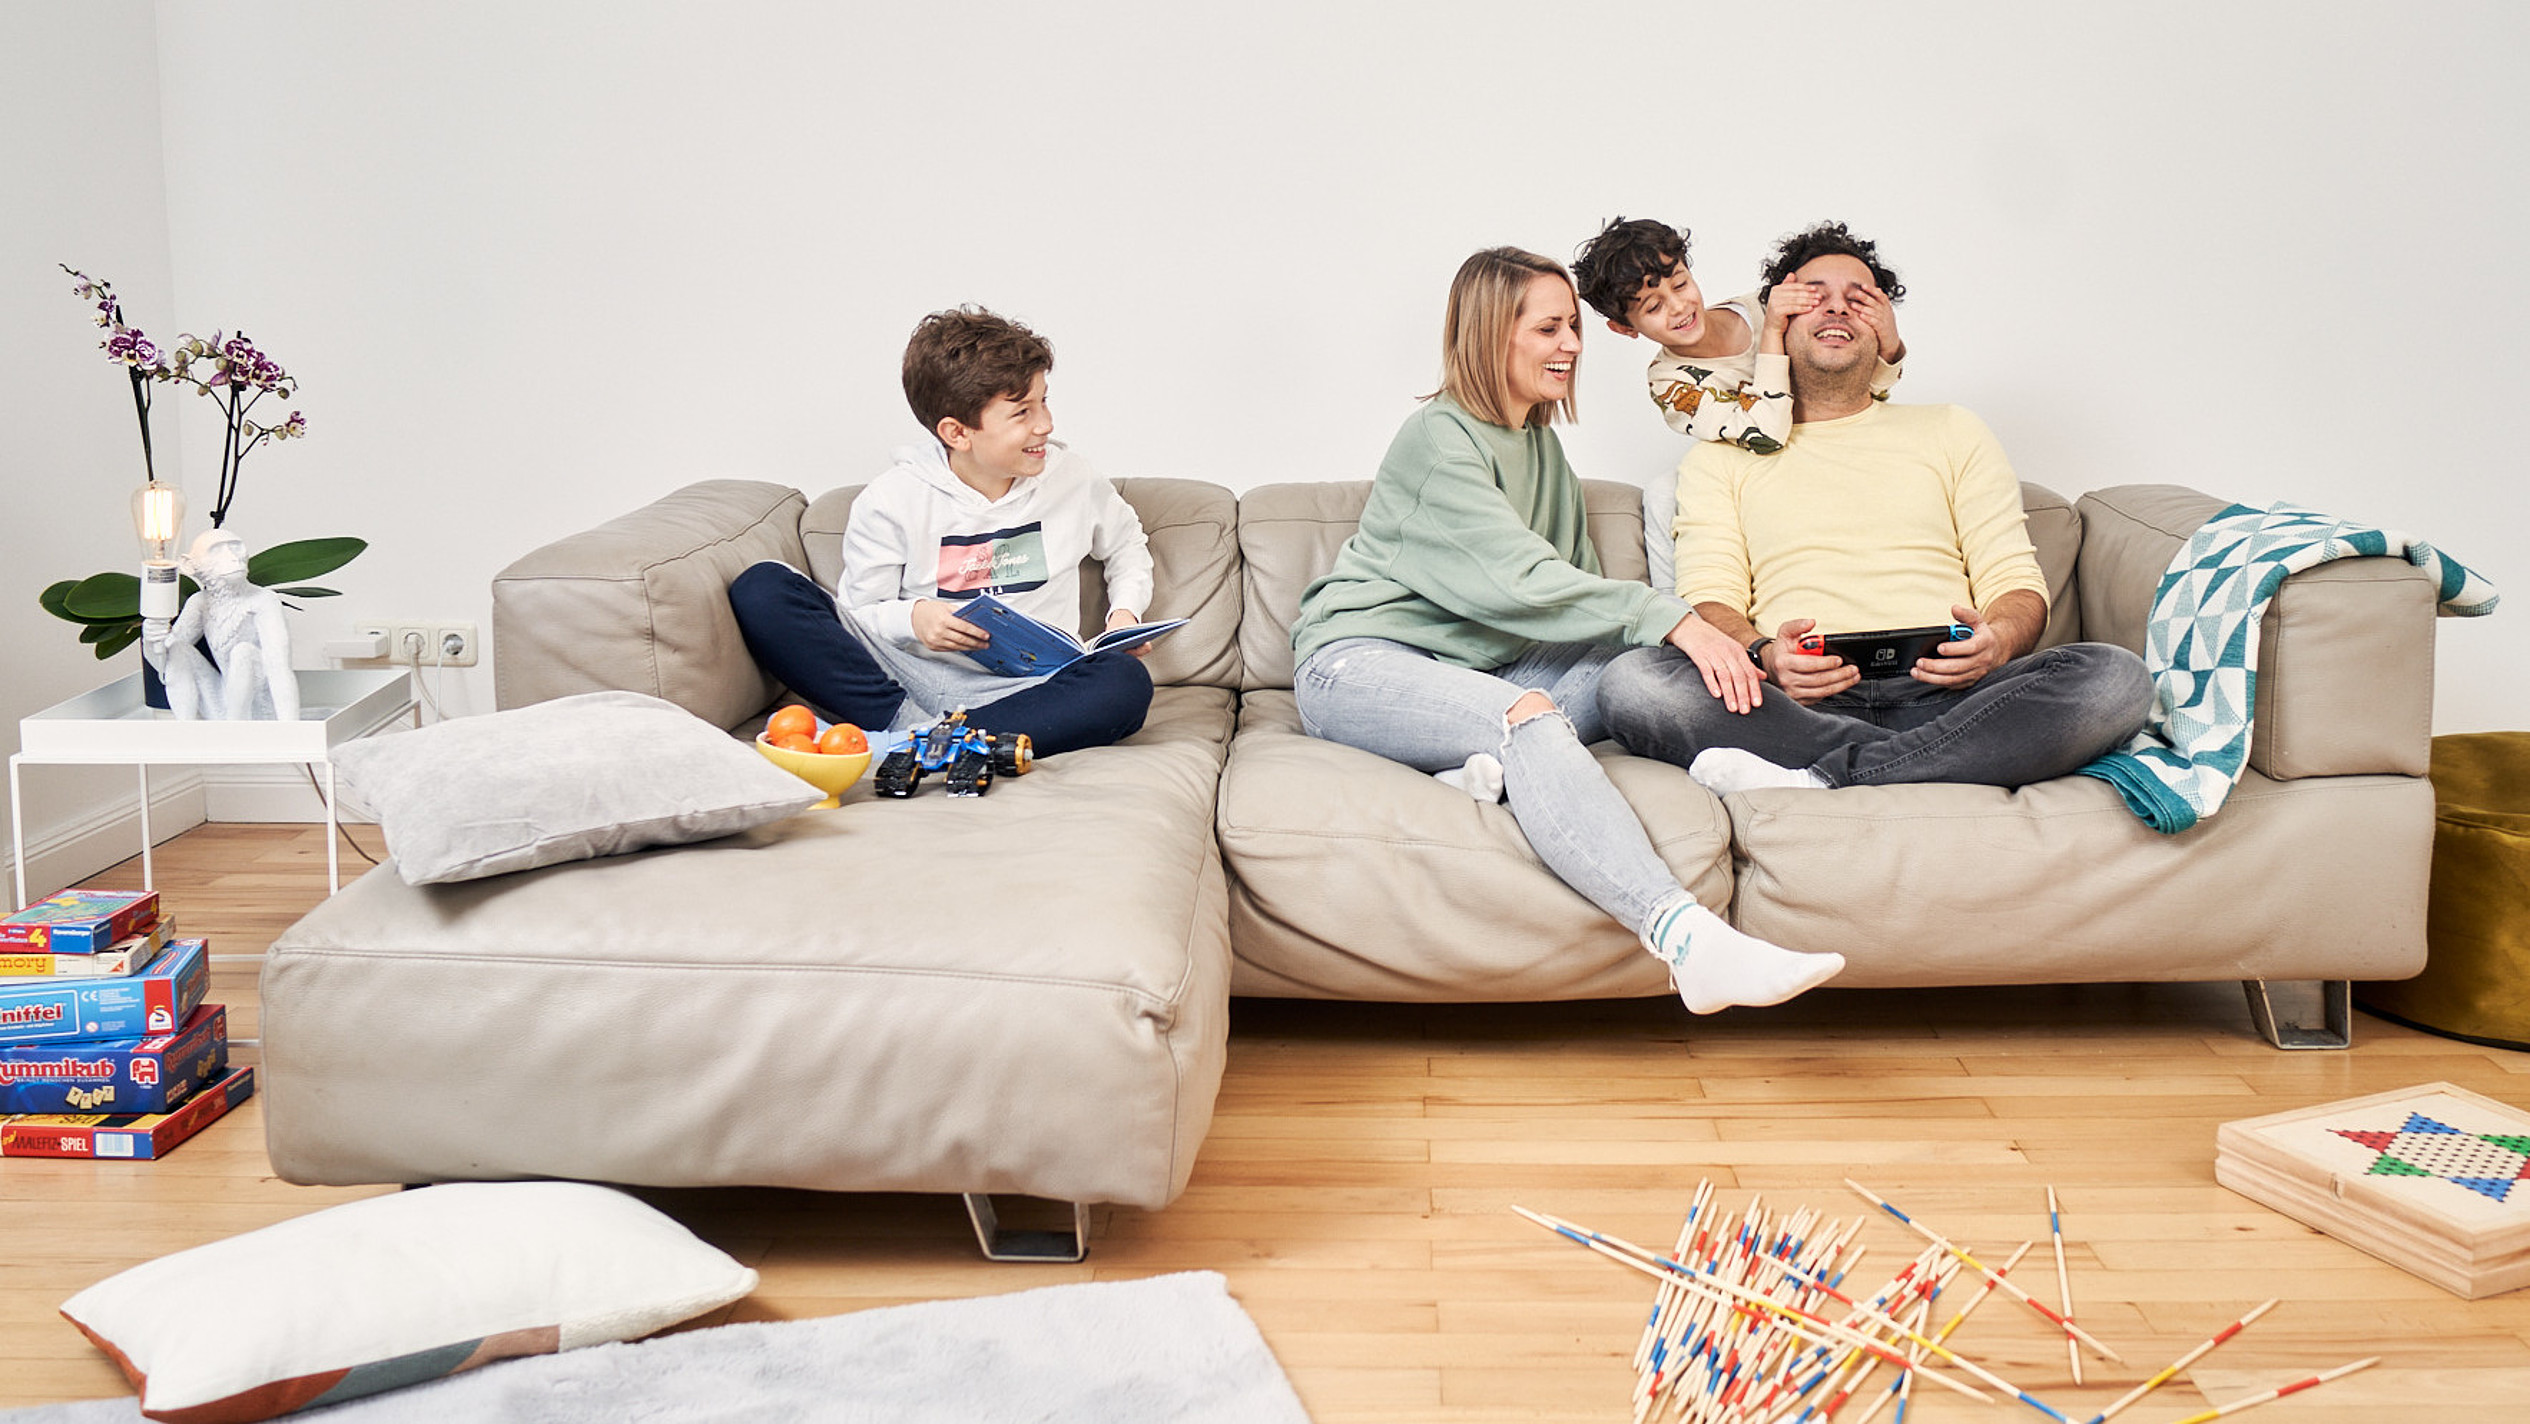 Eine junge Familie mit zwei Kindern spielt auf einem Sofa.